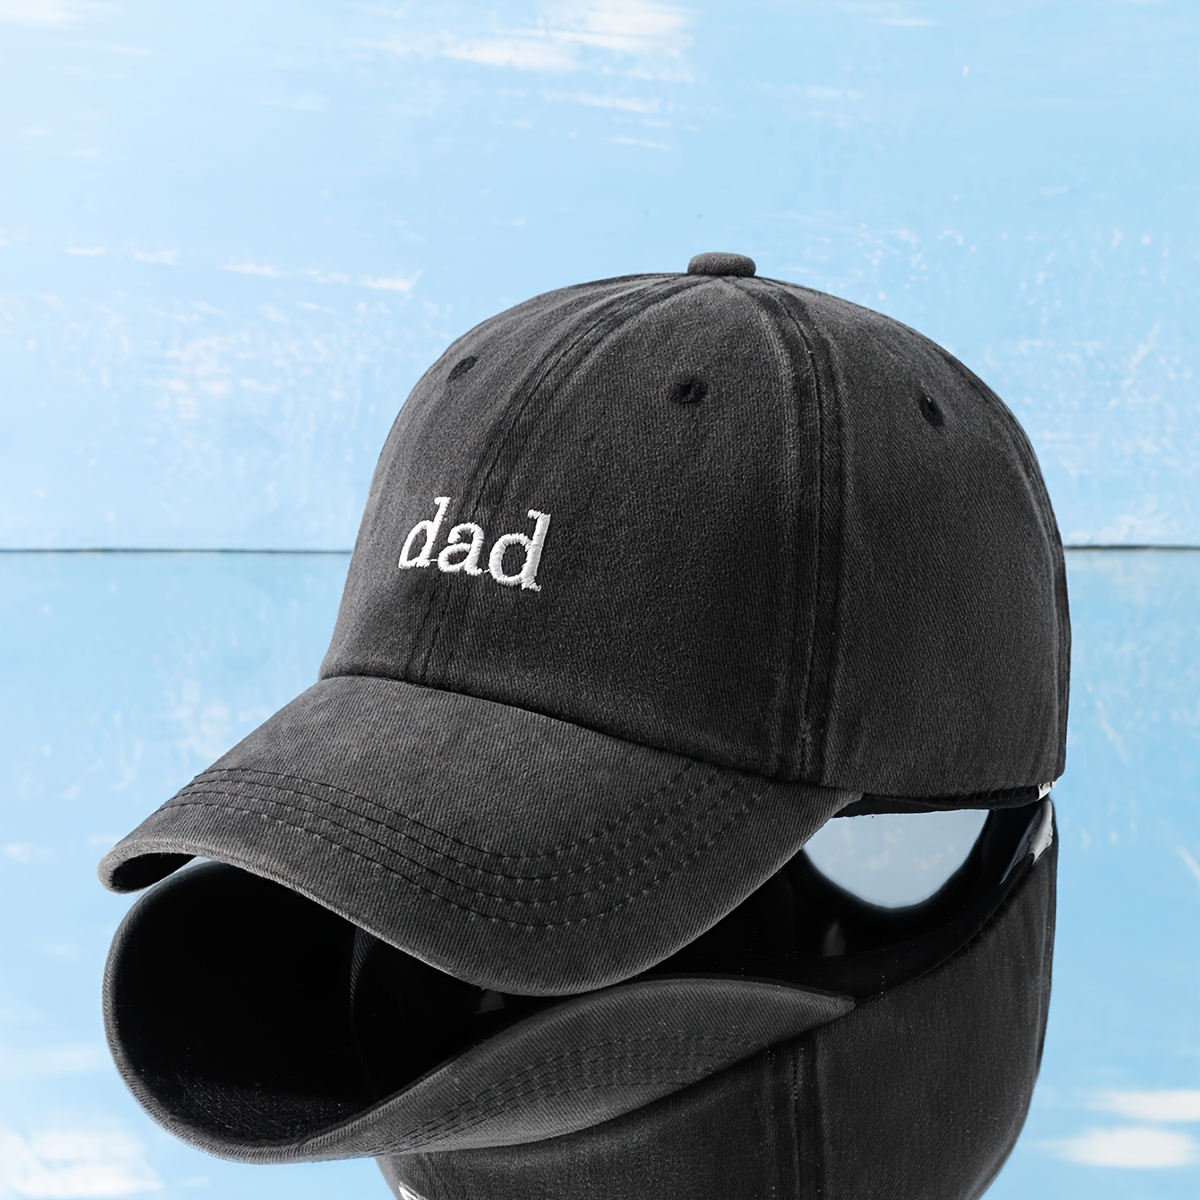 

Casquette de baseball brodée "DAD" délavée, chapeau unisexe en coton, chapeau de golf respirant réglable, convient pour la fête des pères